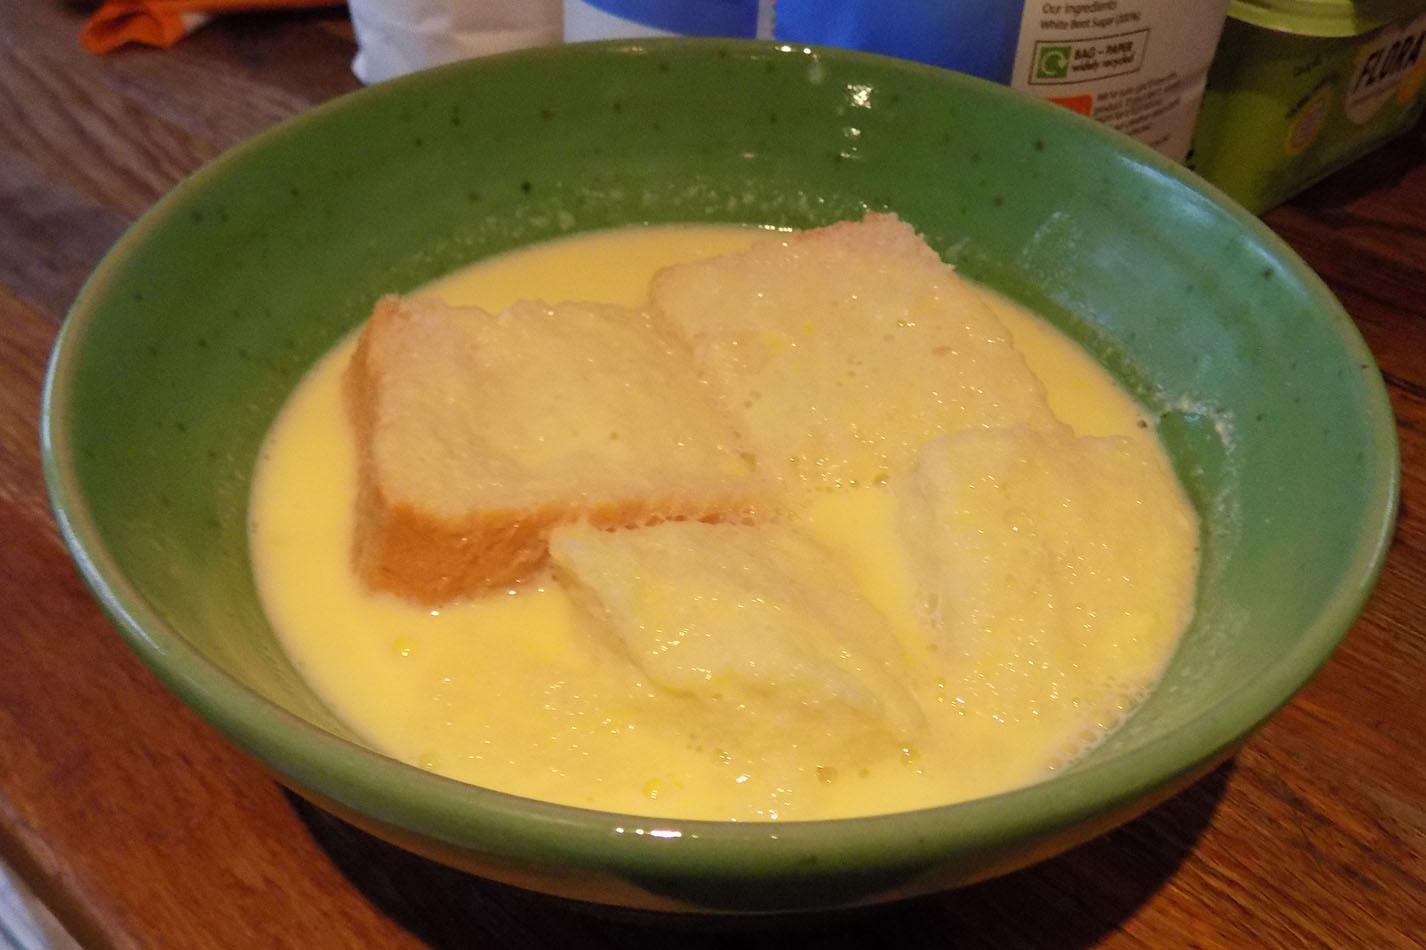 Milk soup on bread - yuk!